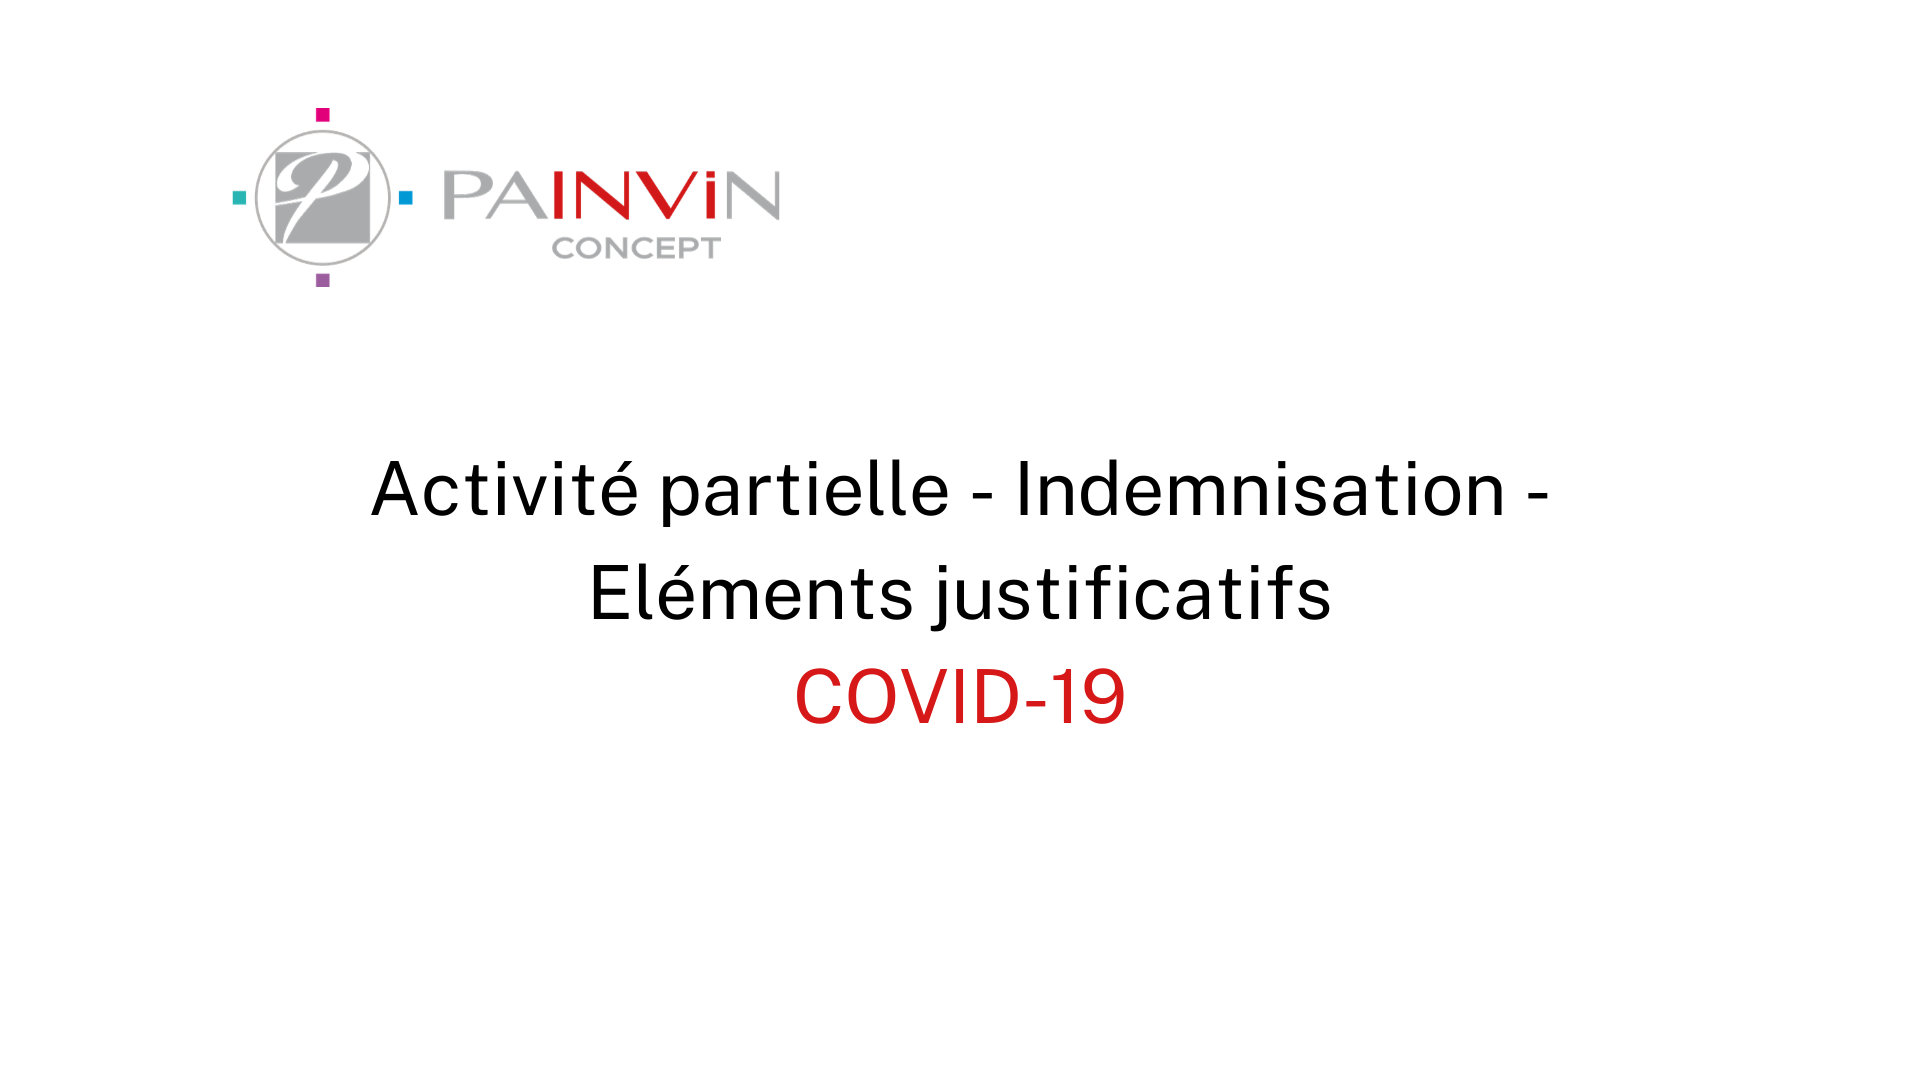 Activité partielle, indemnisation et éléments justificatifs en période de covid-19